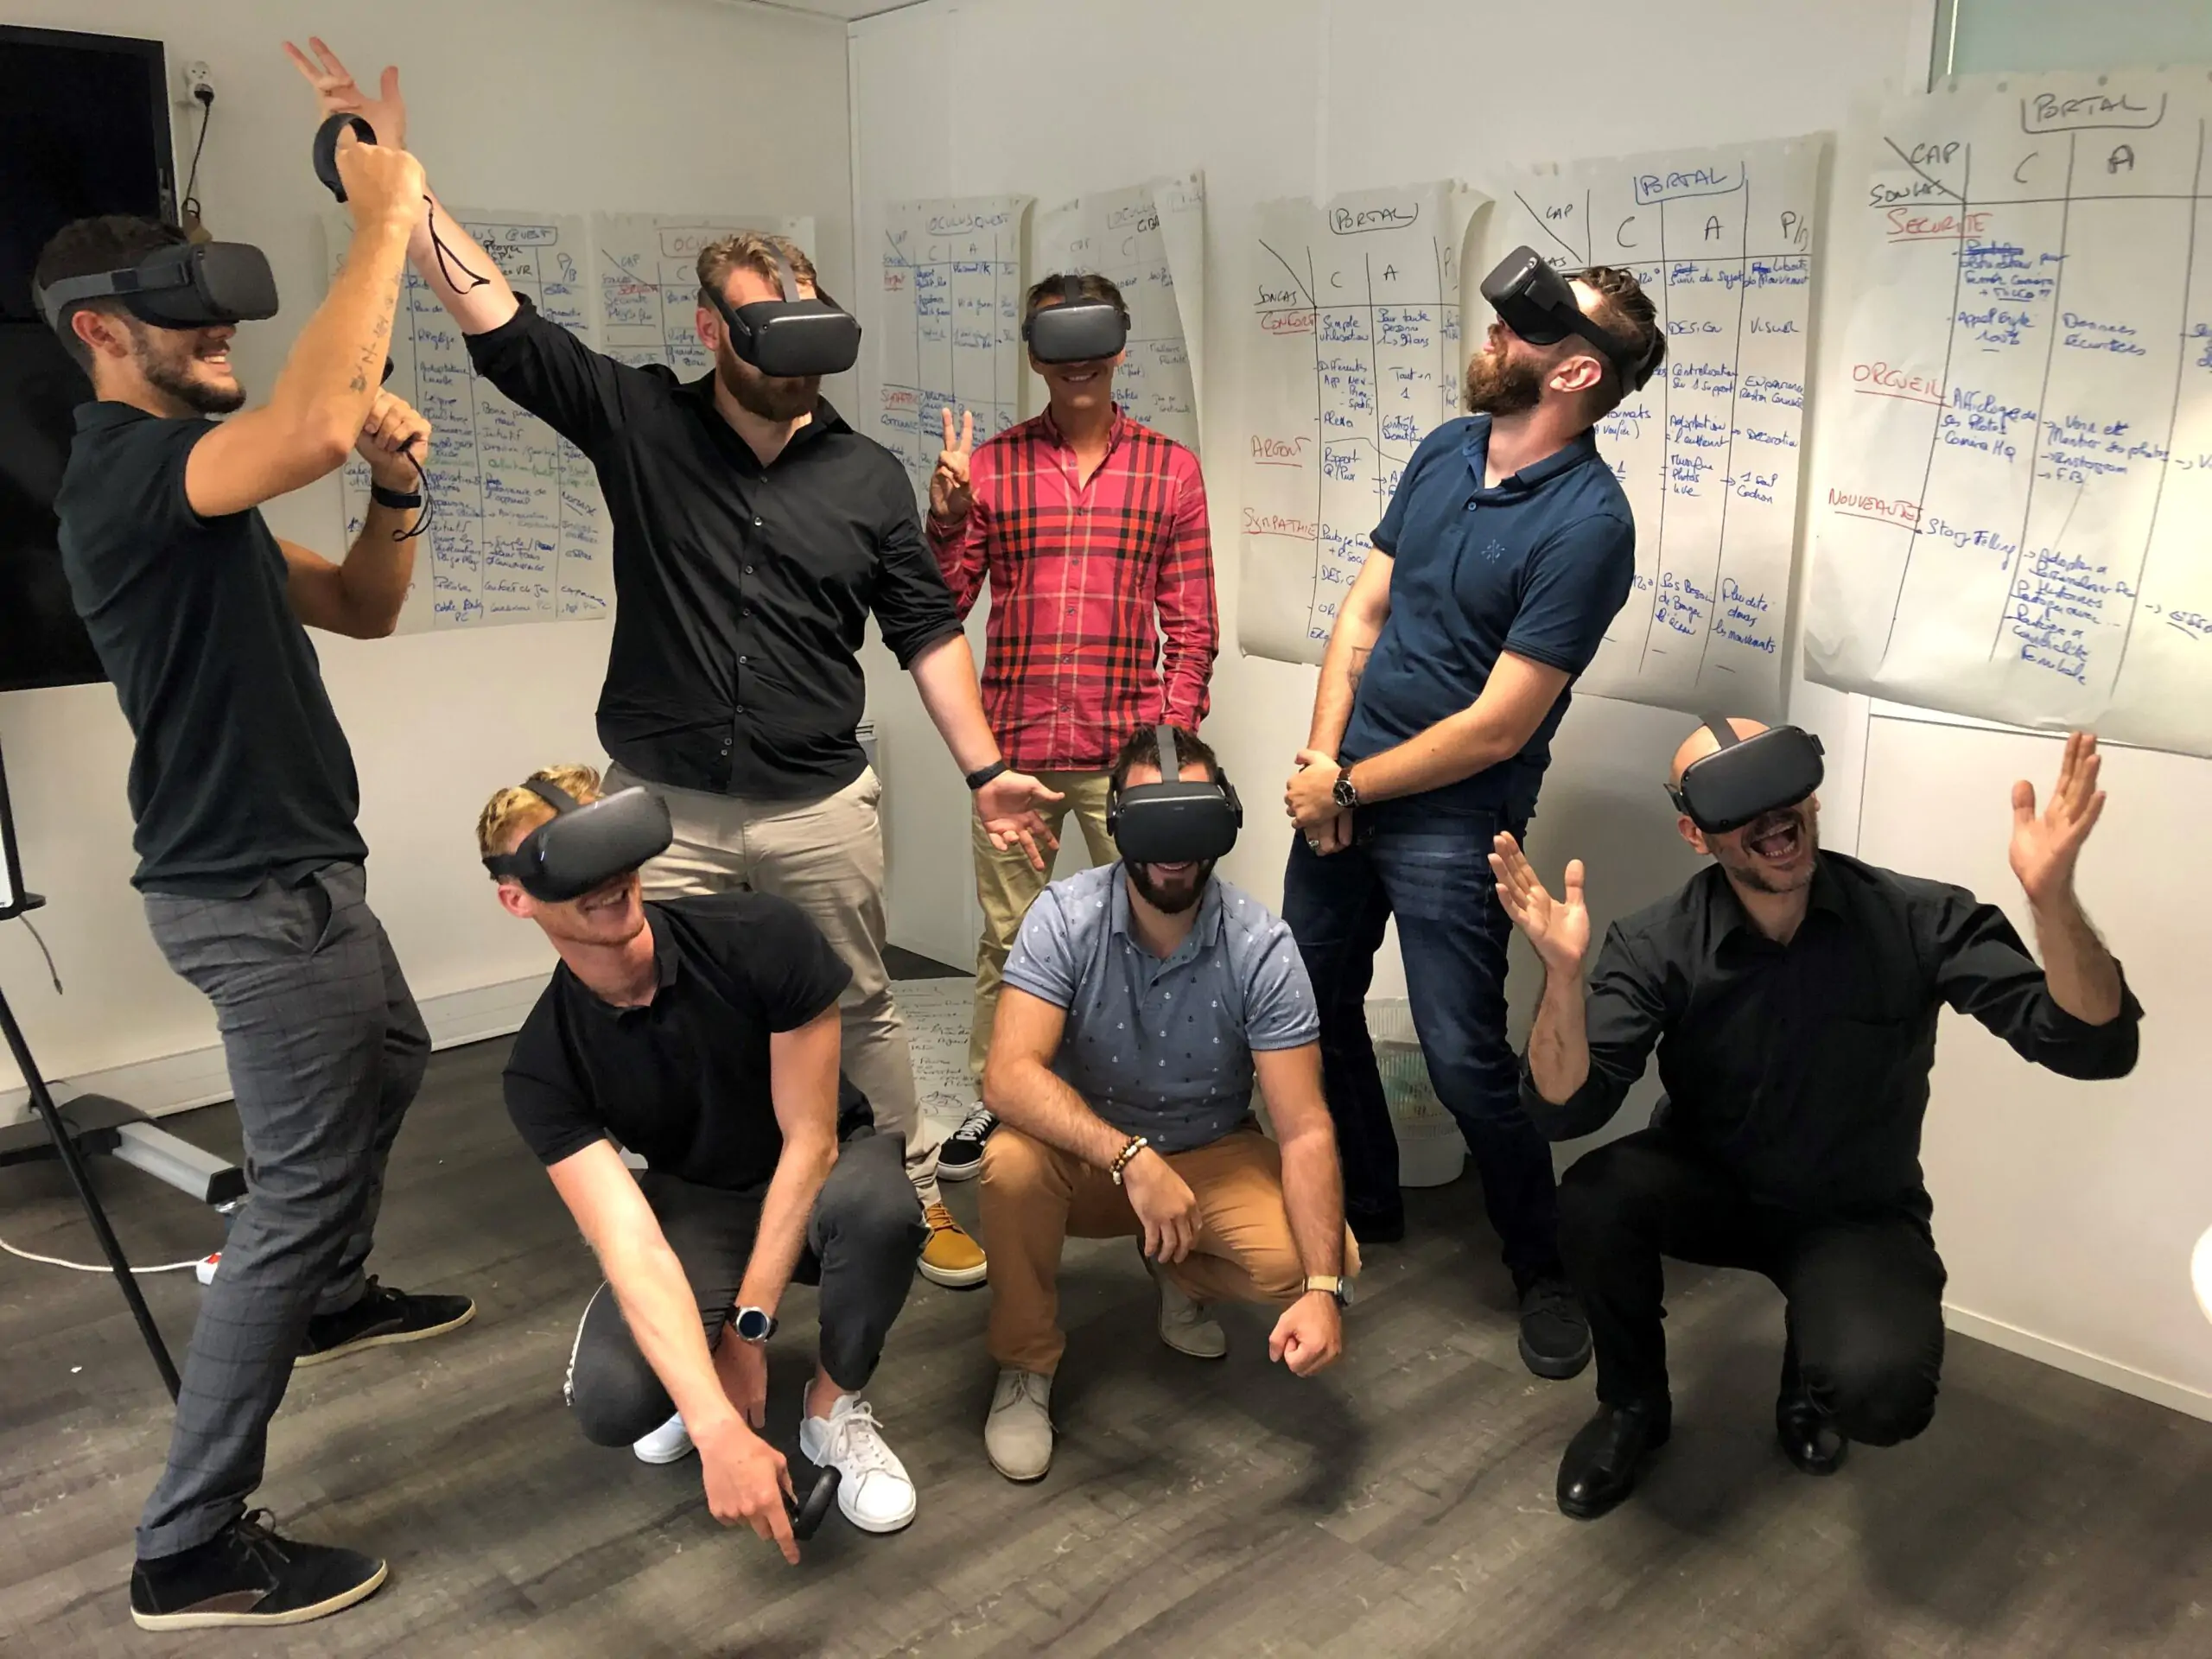 La réalité virtuelle marque son grand retour dans le monde du retail